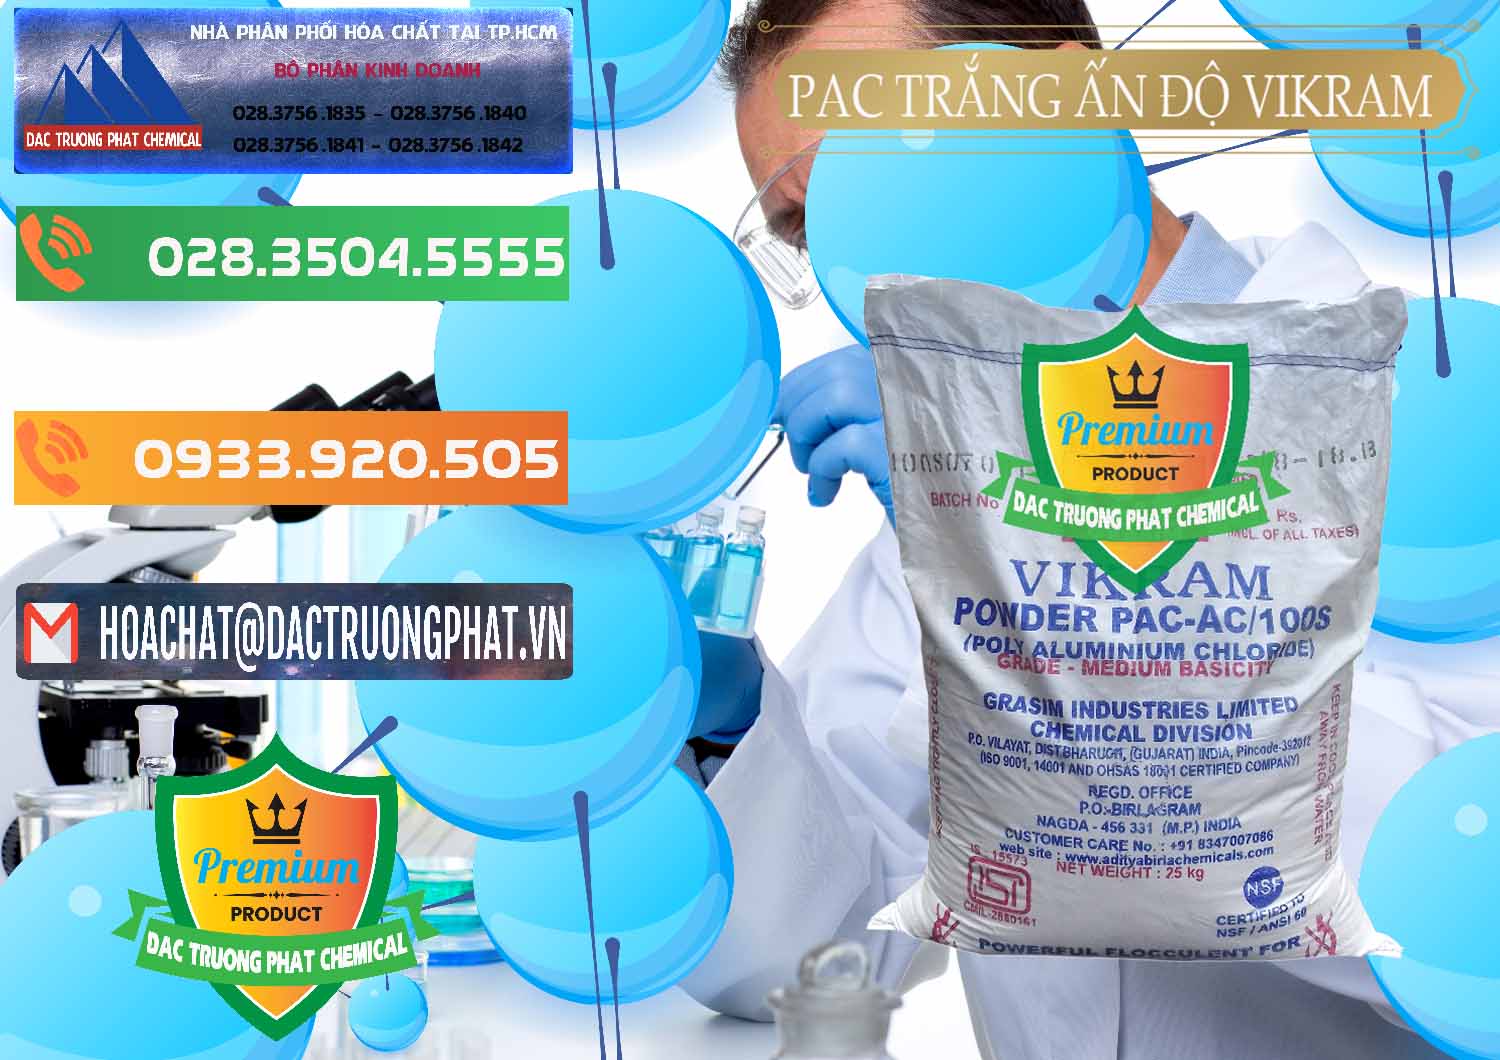 Nơi bán - cung cấp PAC - Polyaluminium Chloride Ấn Độ India Vikram - 0120 - Cty nhập khẩu và phân phối hóa chất tại TP.HCM - hoachatxulynuoc.com.vn